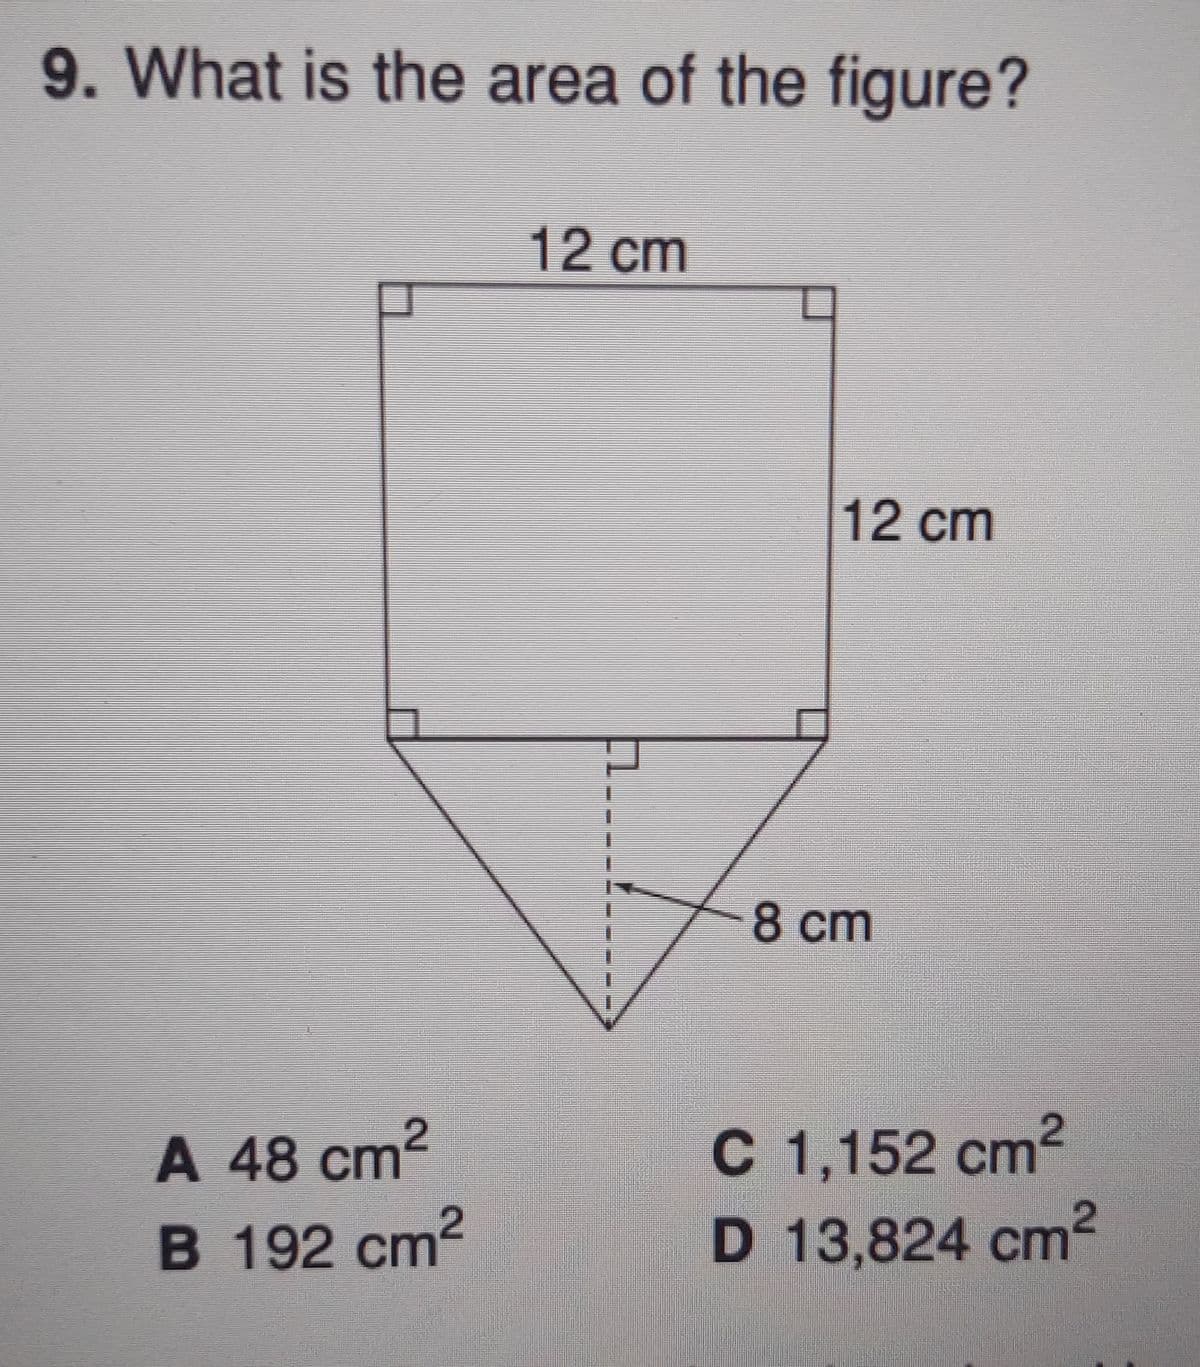 9. What is the area of the figure?
12 cm
12 cm
8 cm
C 1,152 cm2
D 13,824 cm2
A 48 cт?
B 192 cm2
